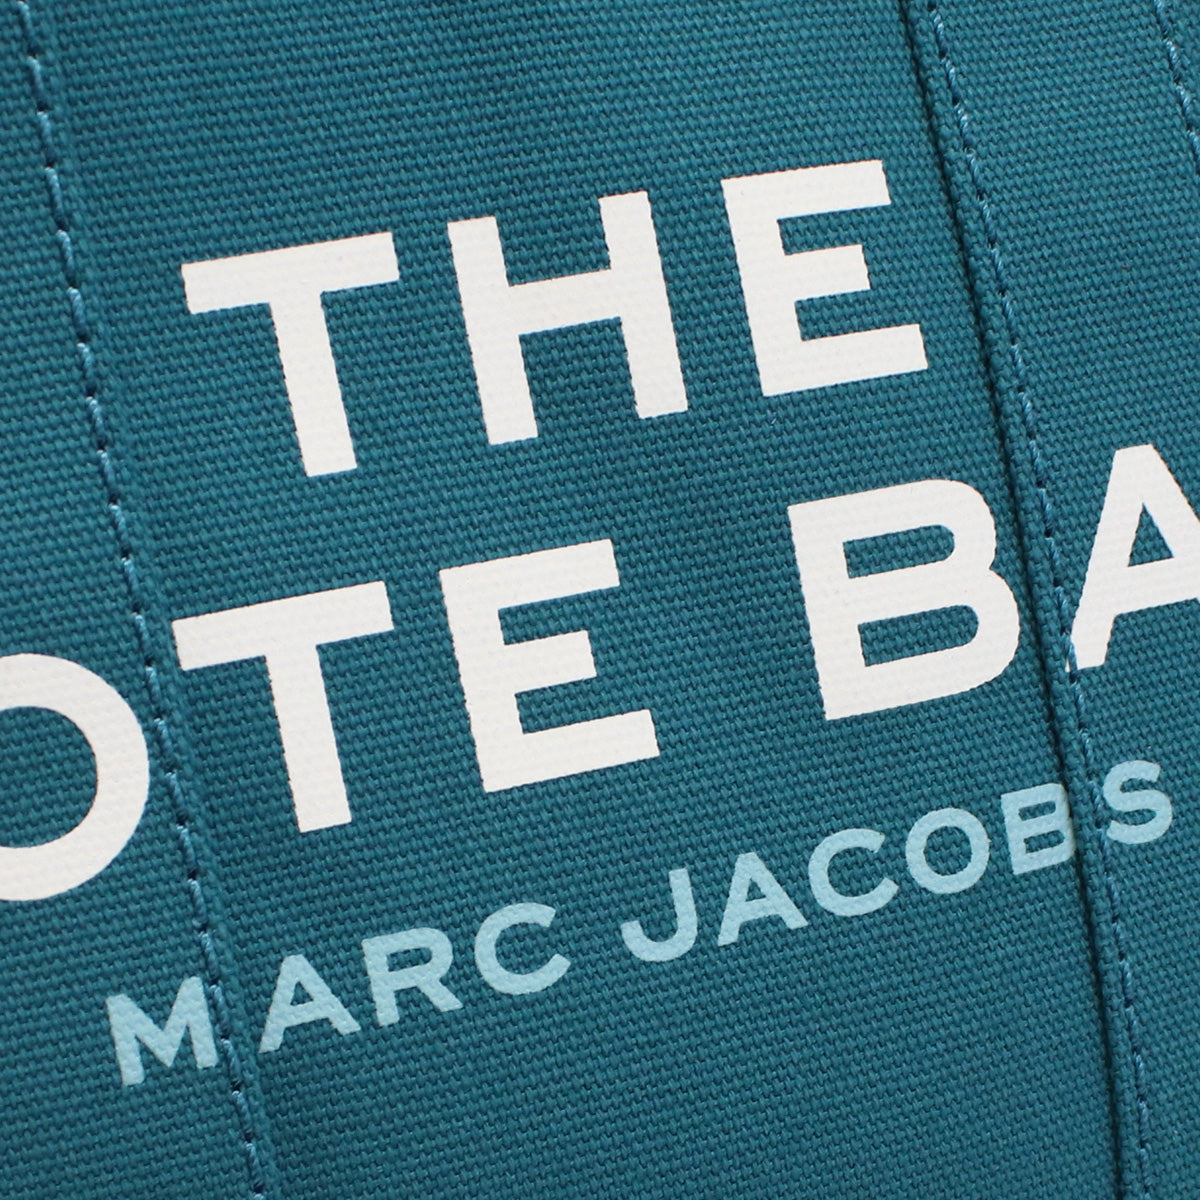 MARC JACOBS マークジェイコブス THE MINI TOTE M0016493 トートバッグ HARBOR BLUE ブルー系 レディース